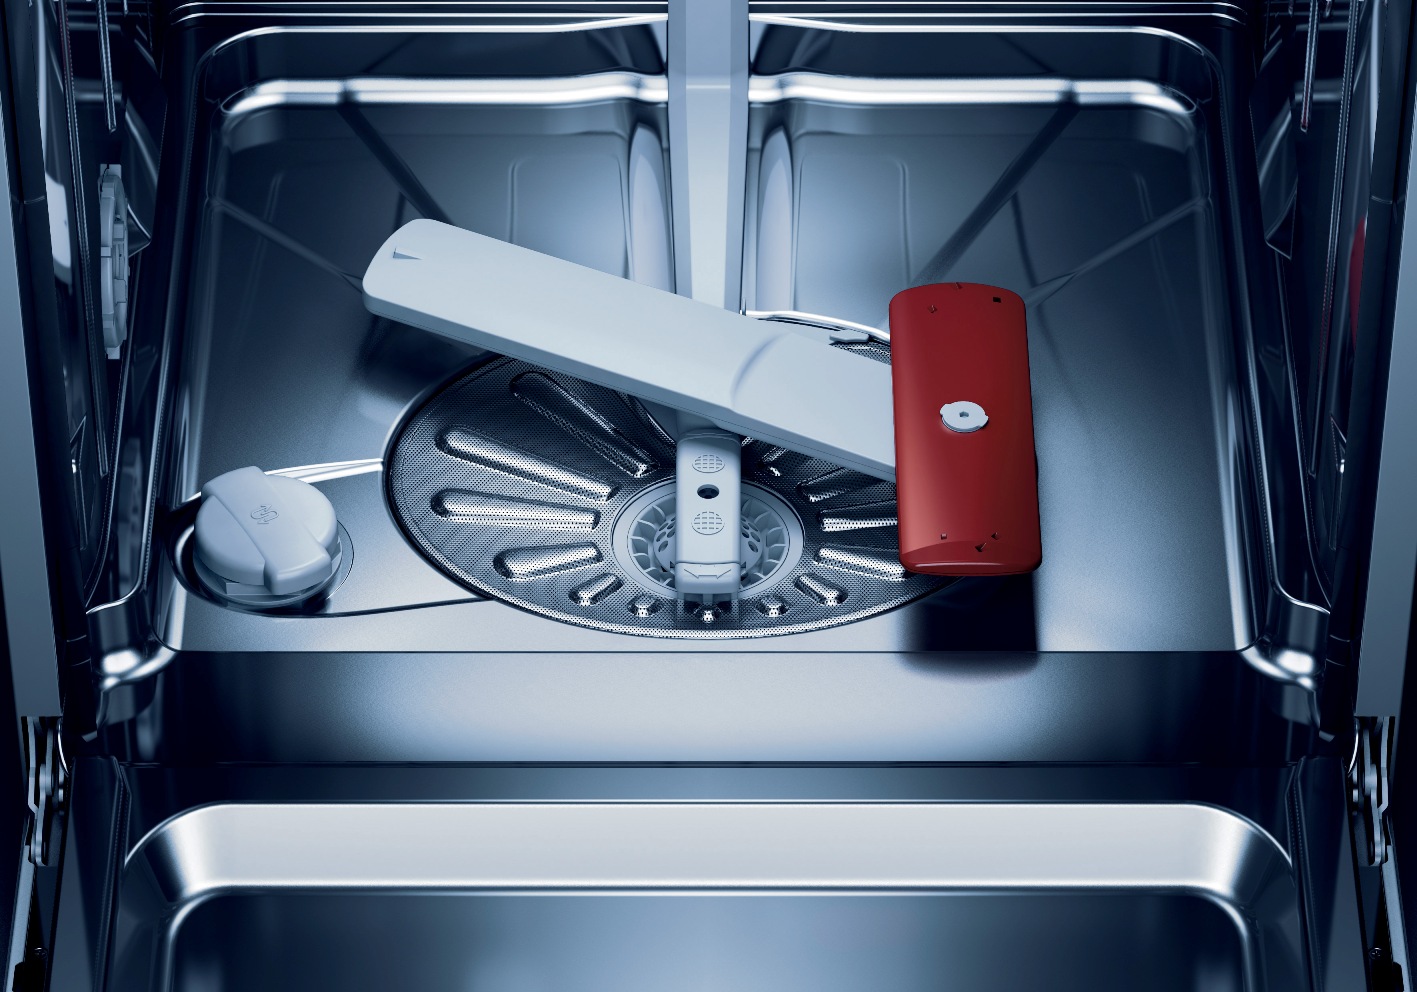 Посудомоечная машина быстрая мойка. Посудомойка AEG Favorit PROCLEAN. Посудомоечная машина AEG подача воды. Посудомоечная машина Goodwell 1045 bi. Турбосушка в посудомойке.